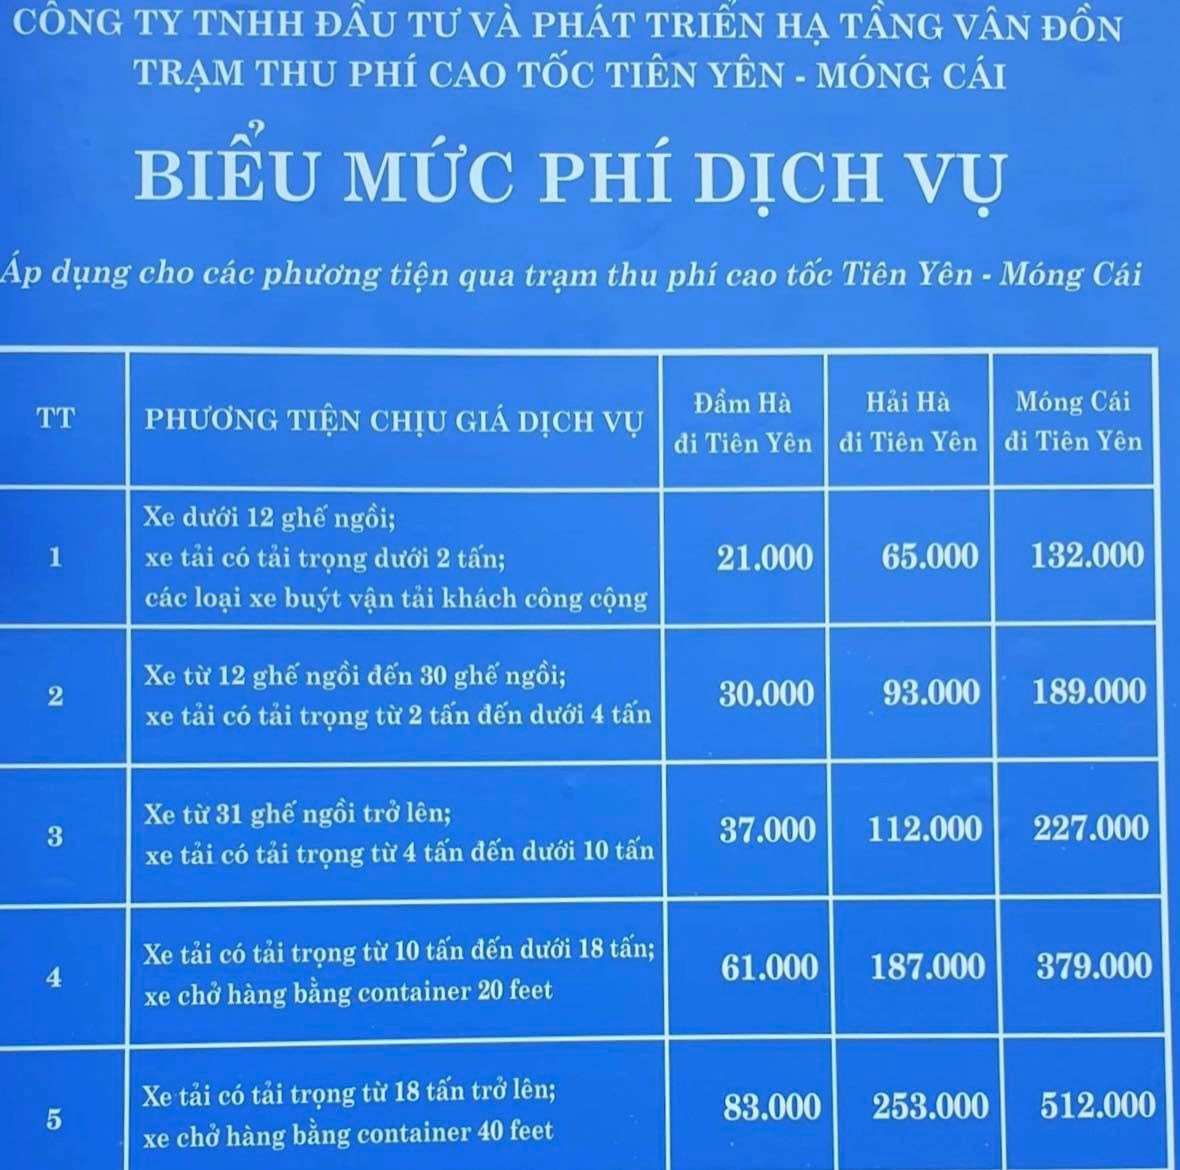 Biểu mức phí dịch vụ tuyến cao tốc Vân Đồn - Móng Cái. Ảnh: Nguyễn Hùng